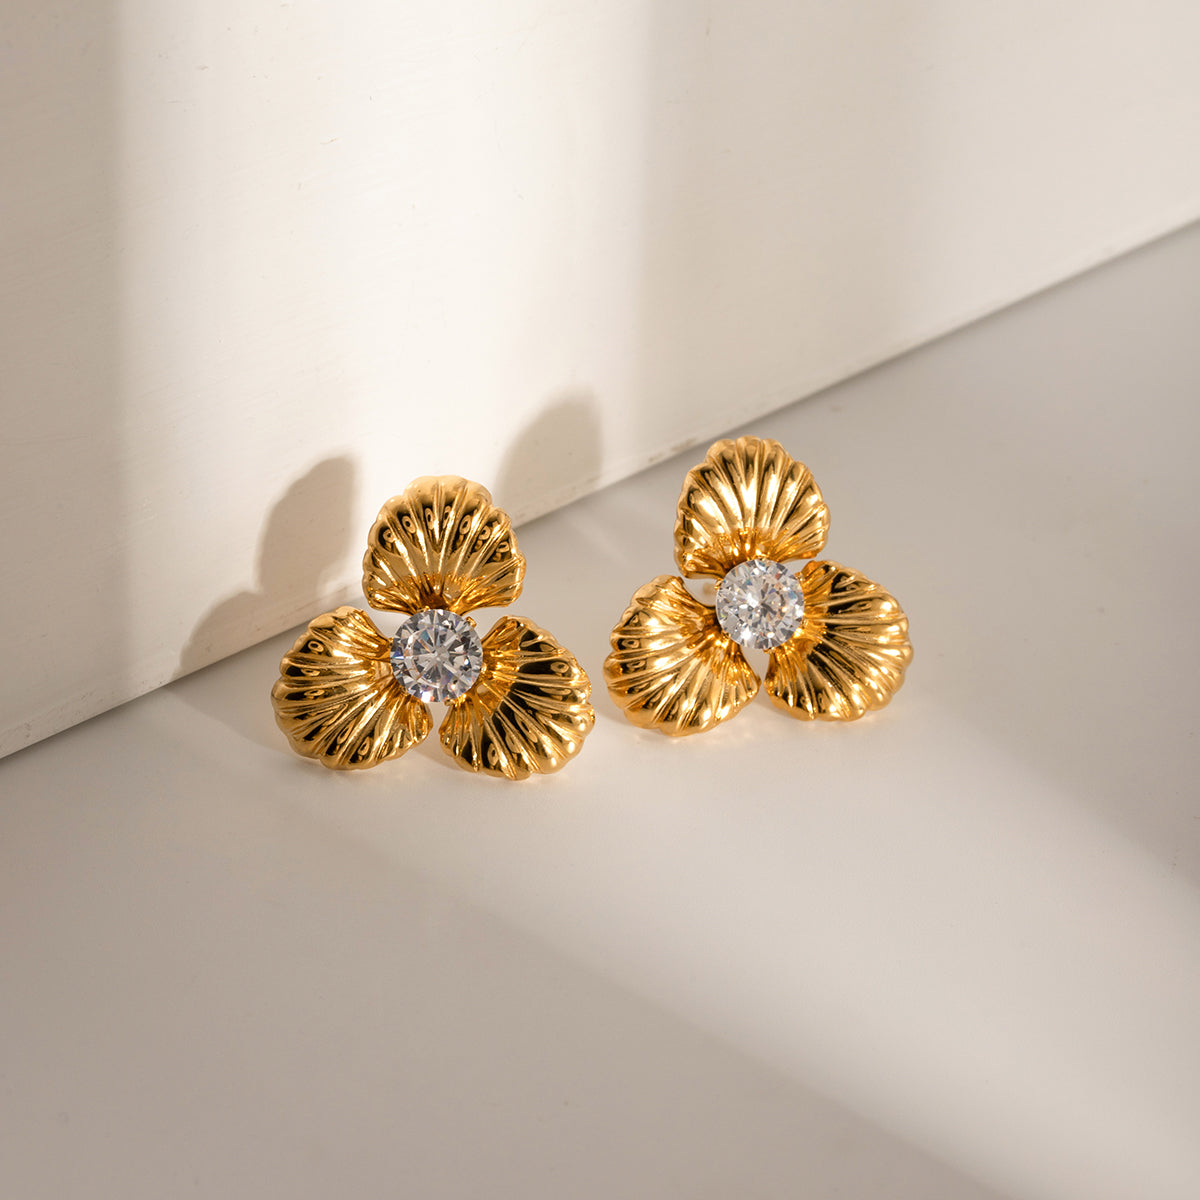 TEEK - Gold Stainless Steel Zircon Flower Shape Earrings JEWELRY TEEK Trend   